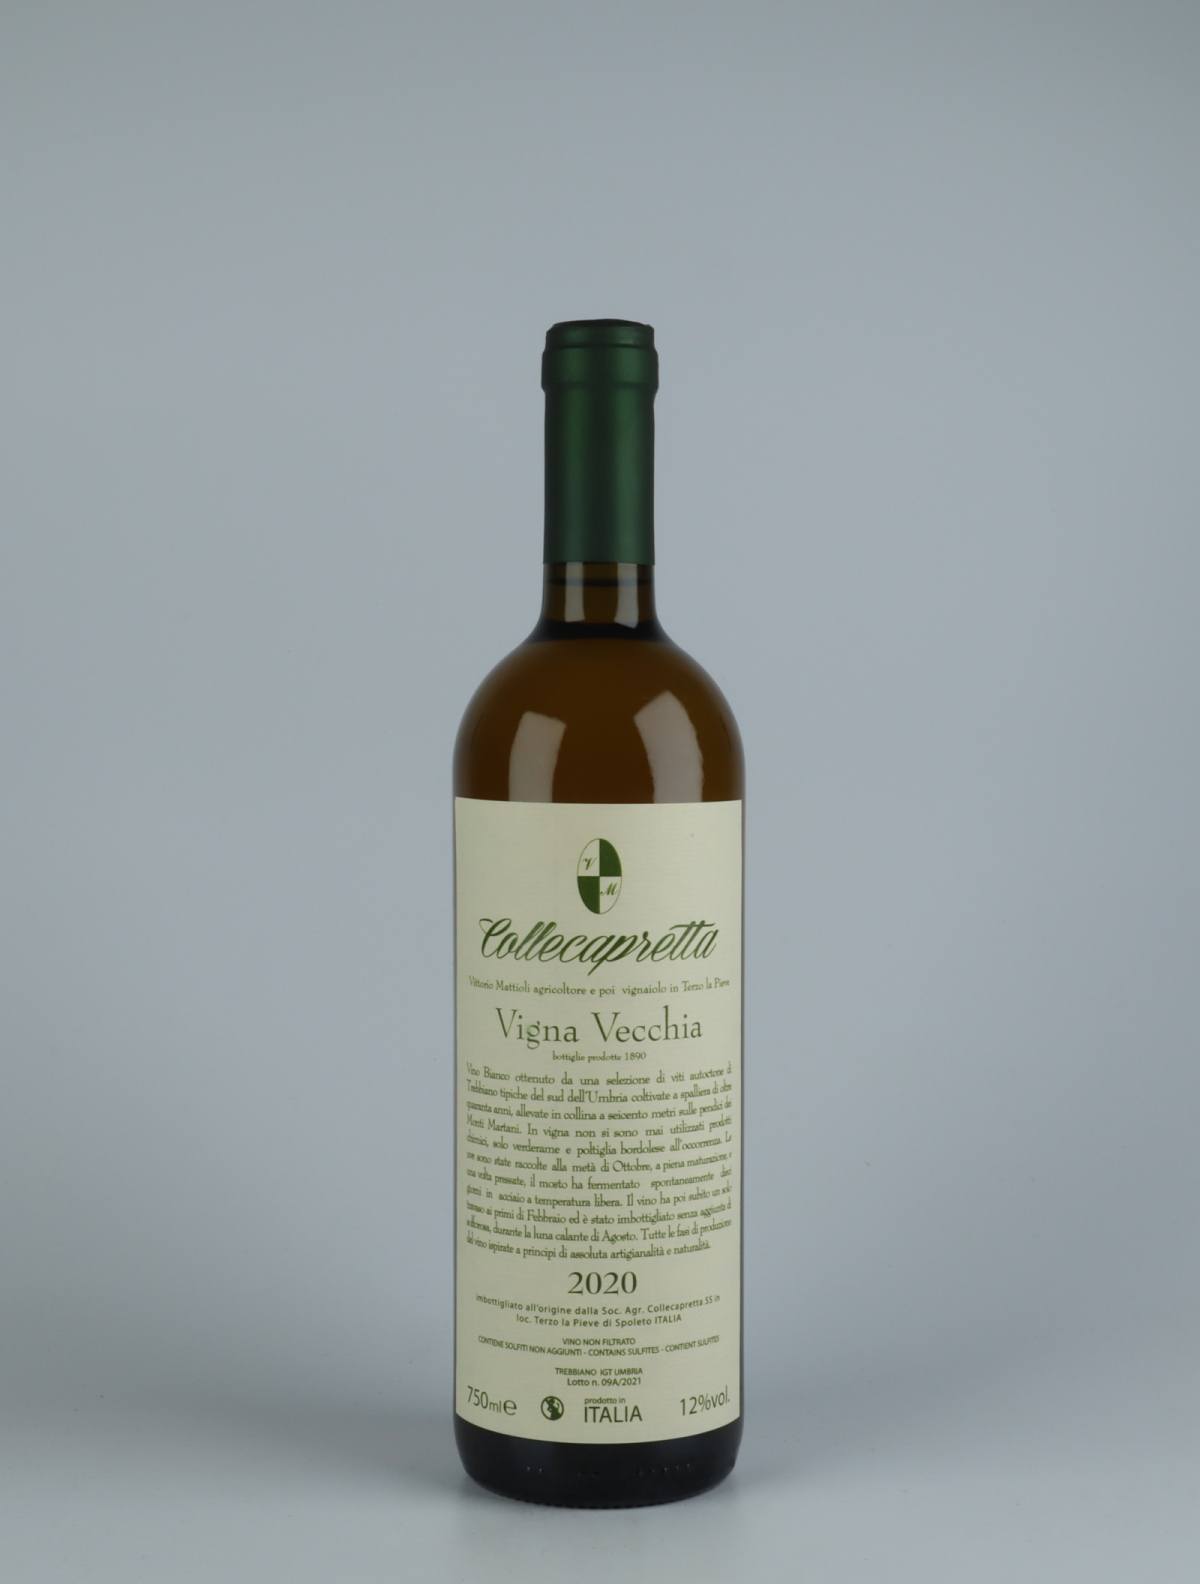 A bottle 2020 Vigna Vecchia Orange wine from Collecapretta, Umbria in Italy